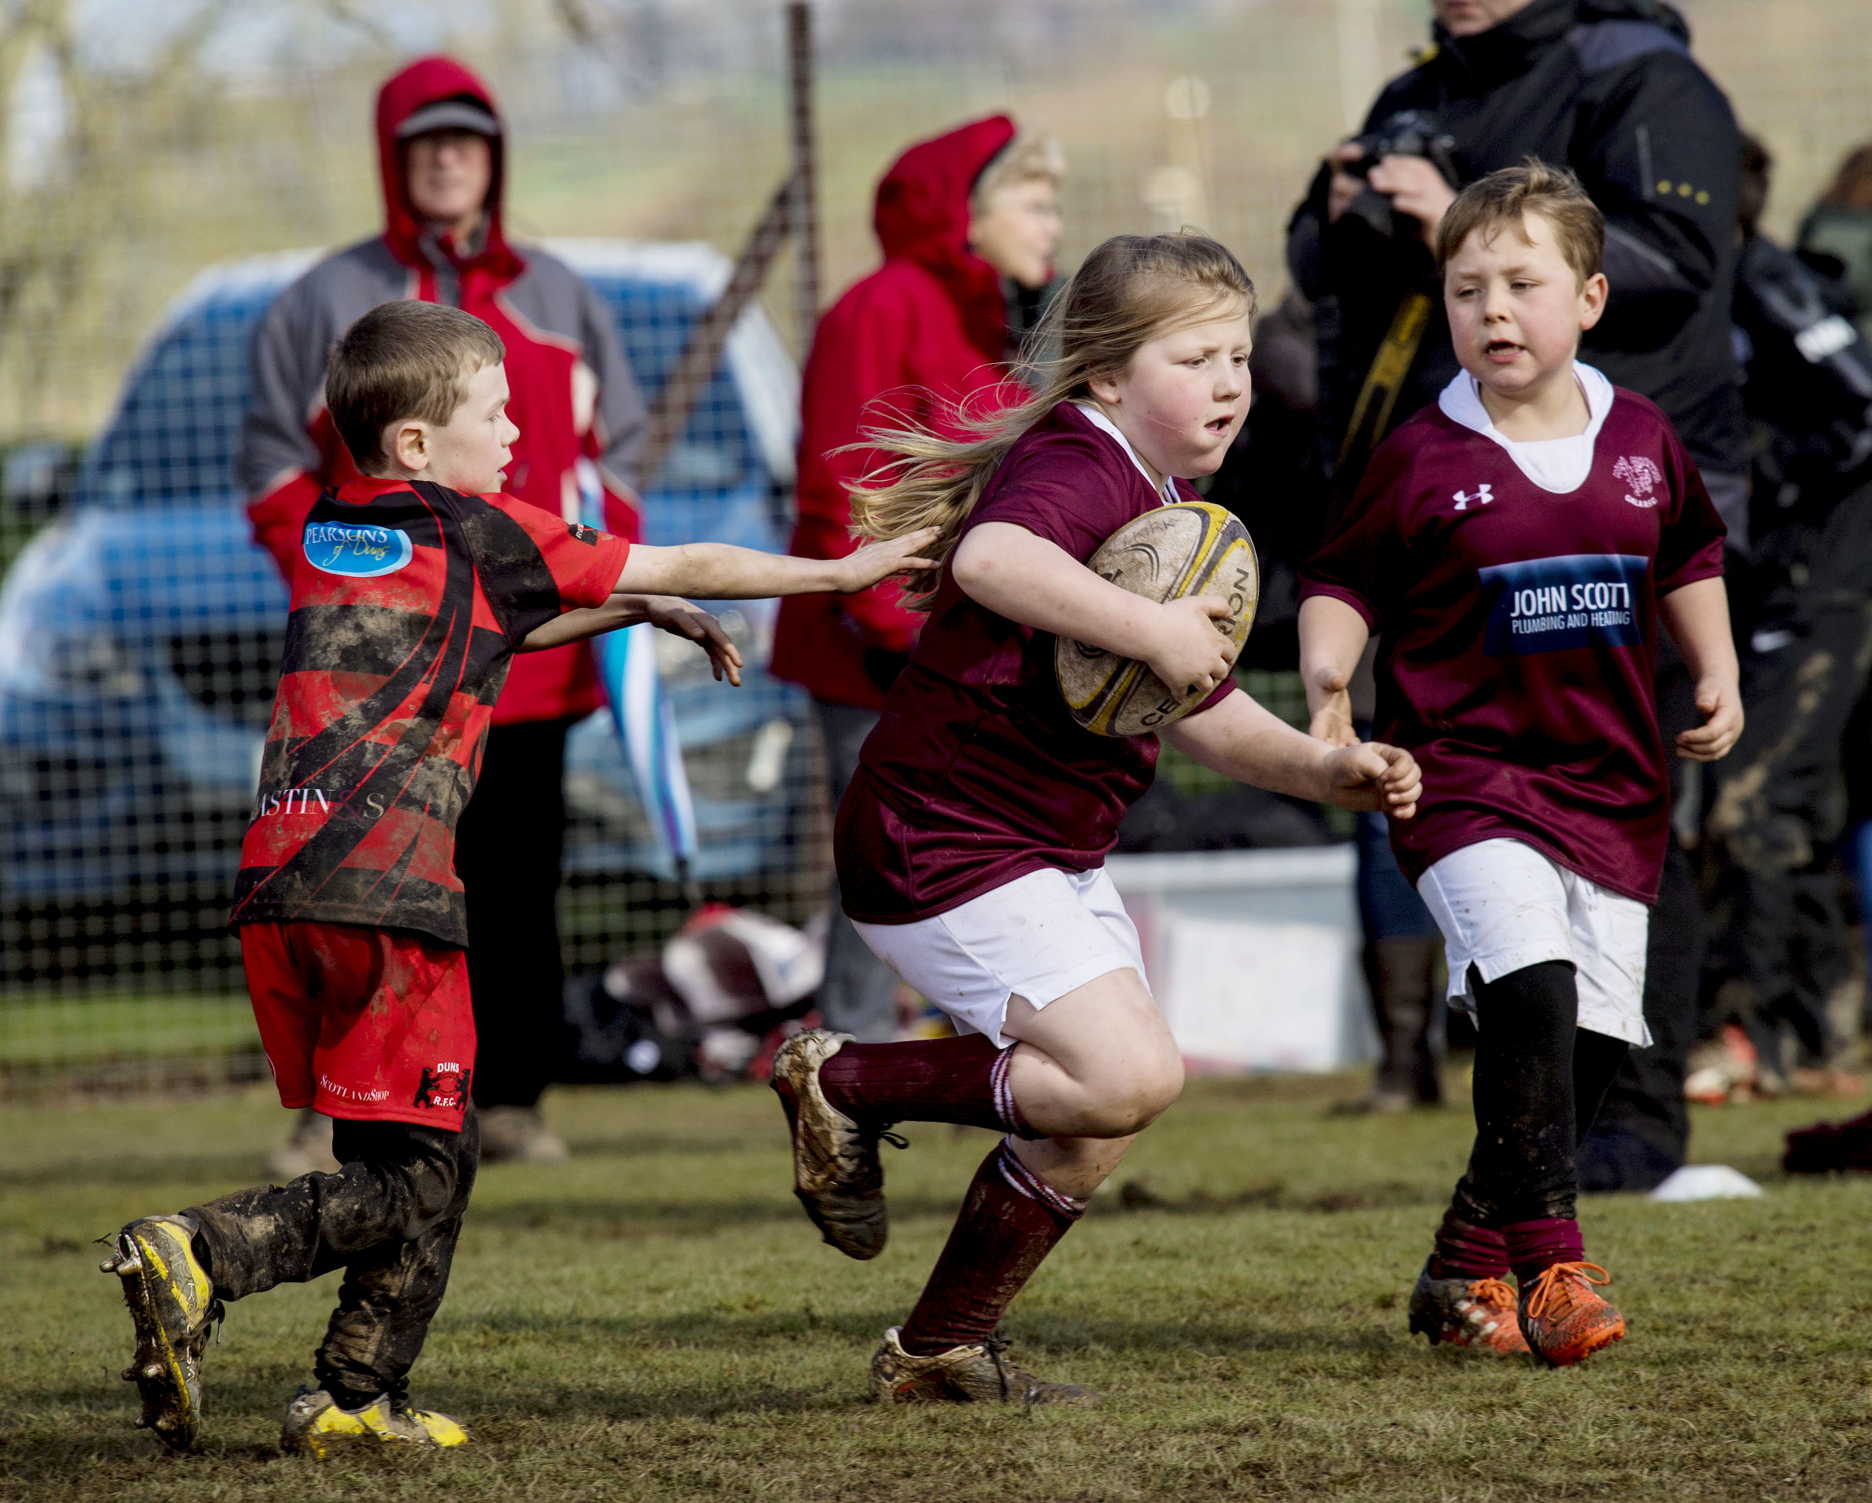 Initier les enfants au Rugby - Le Blog Wesco